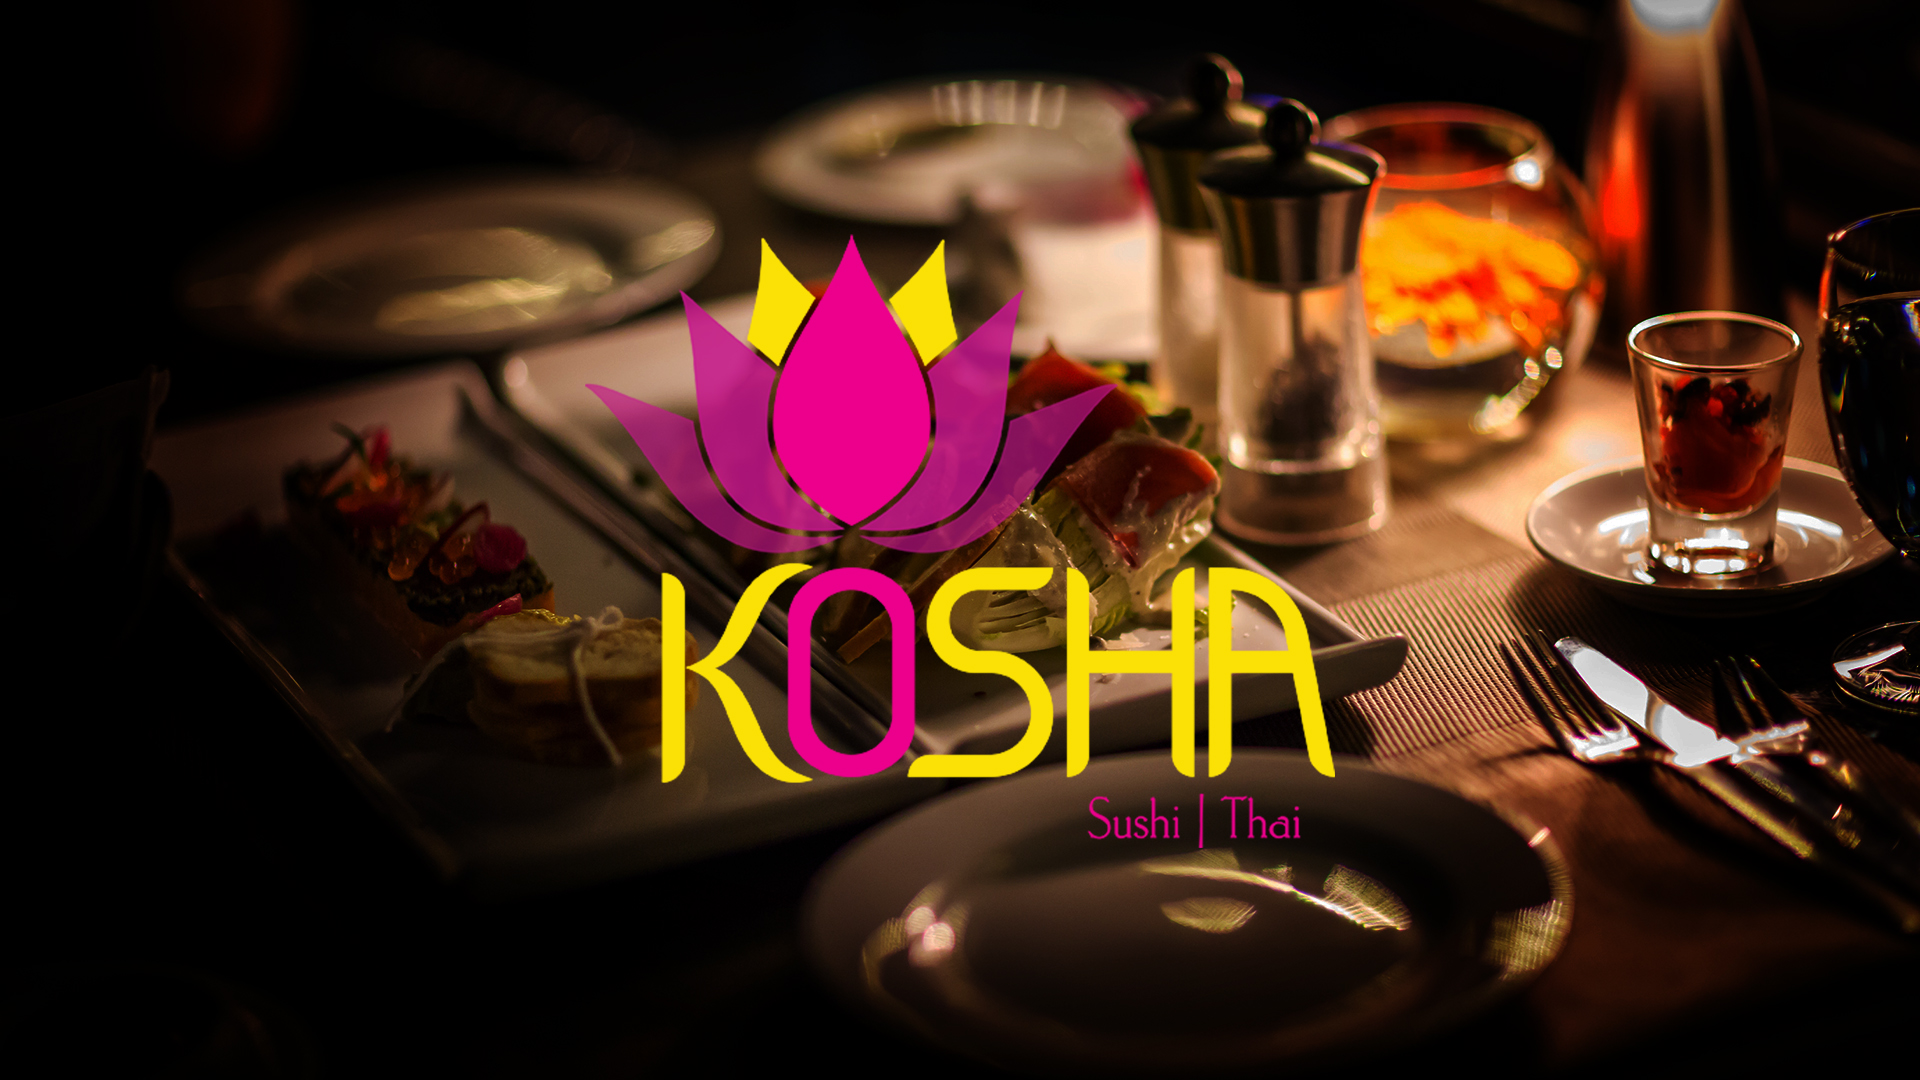 Kosha restaurant banner